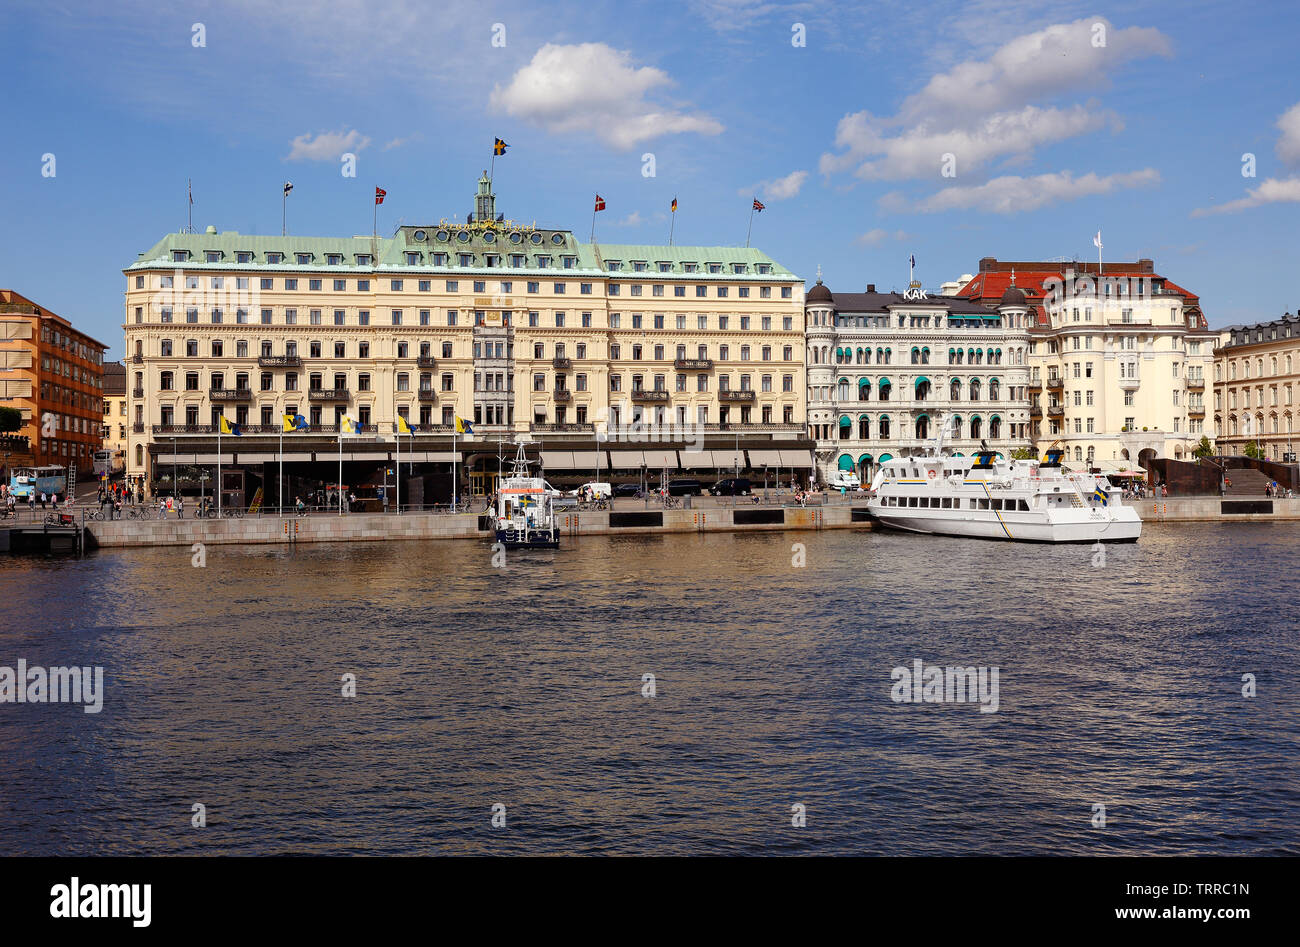 Stoccolma, Svezia - 10 Giugno 2019: vista esterna del Grand hotel. Foto Stock